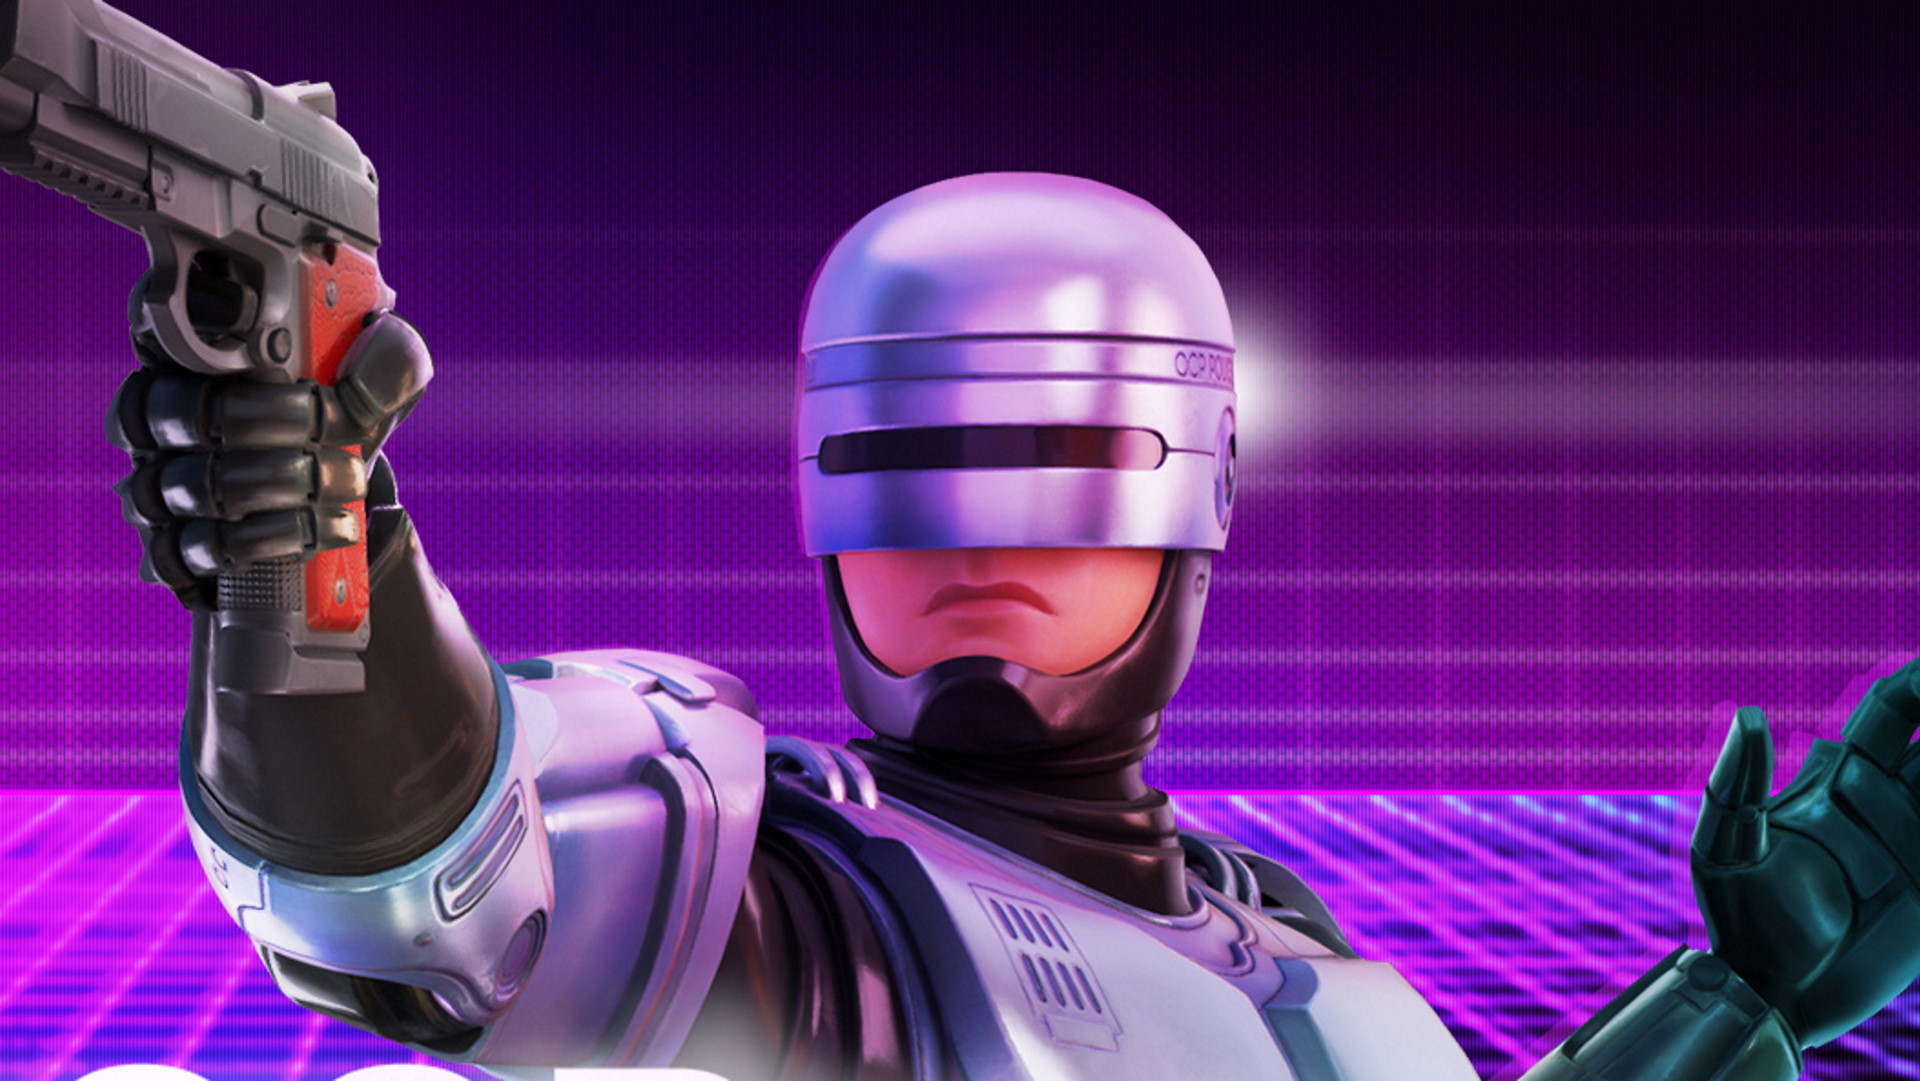 Robocop—the original, good one—comes to Fortnite